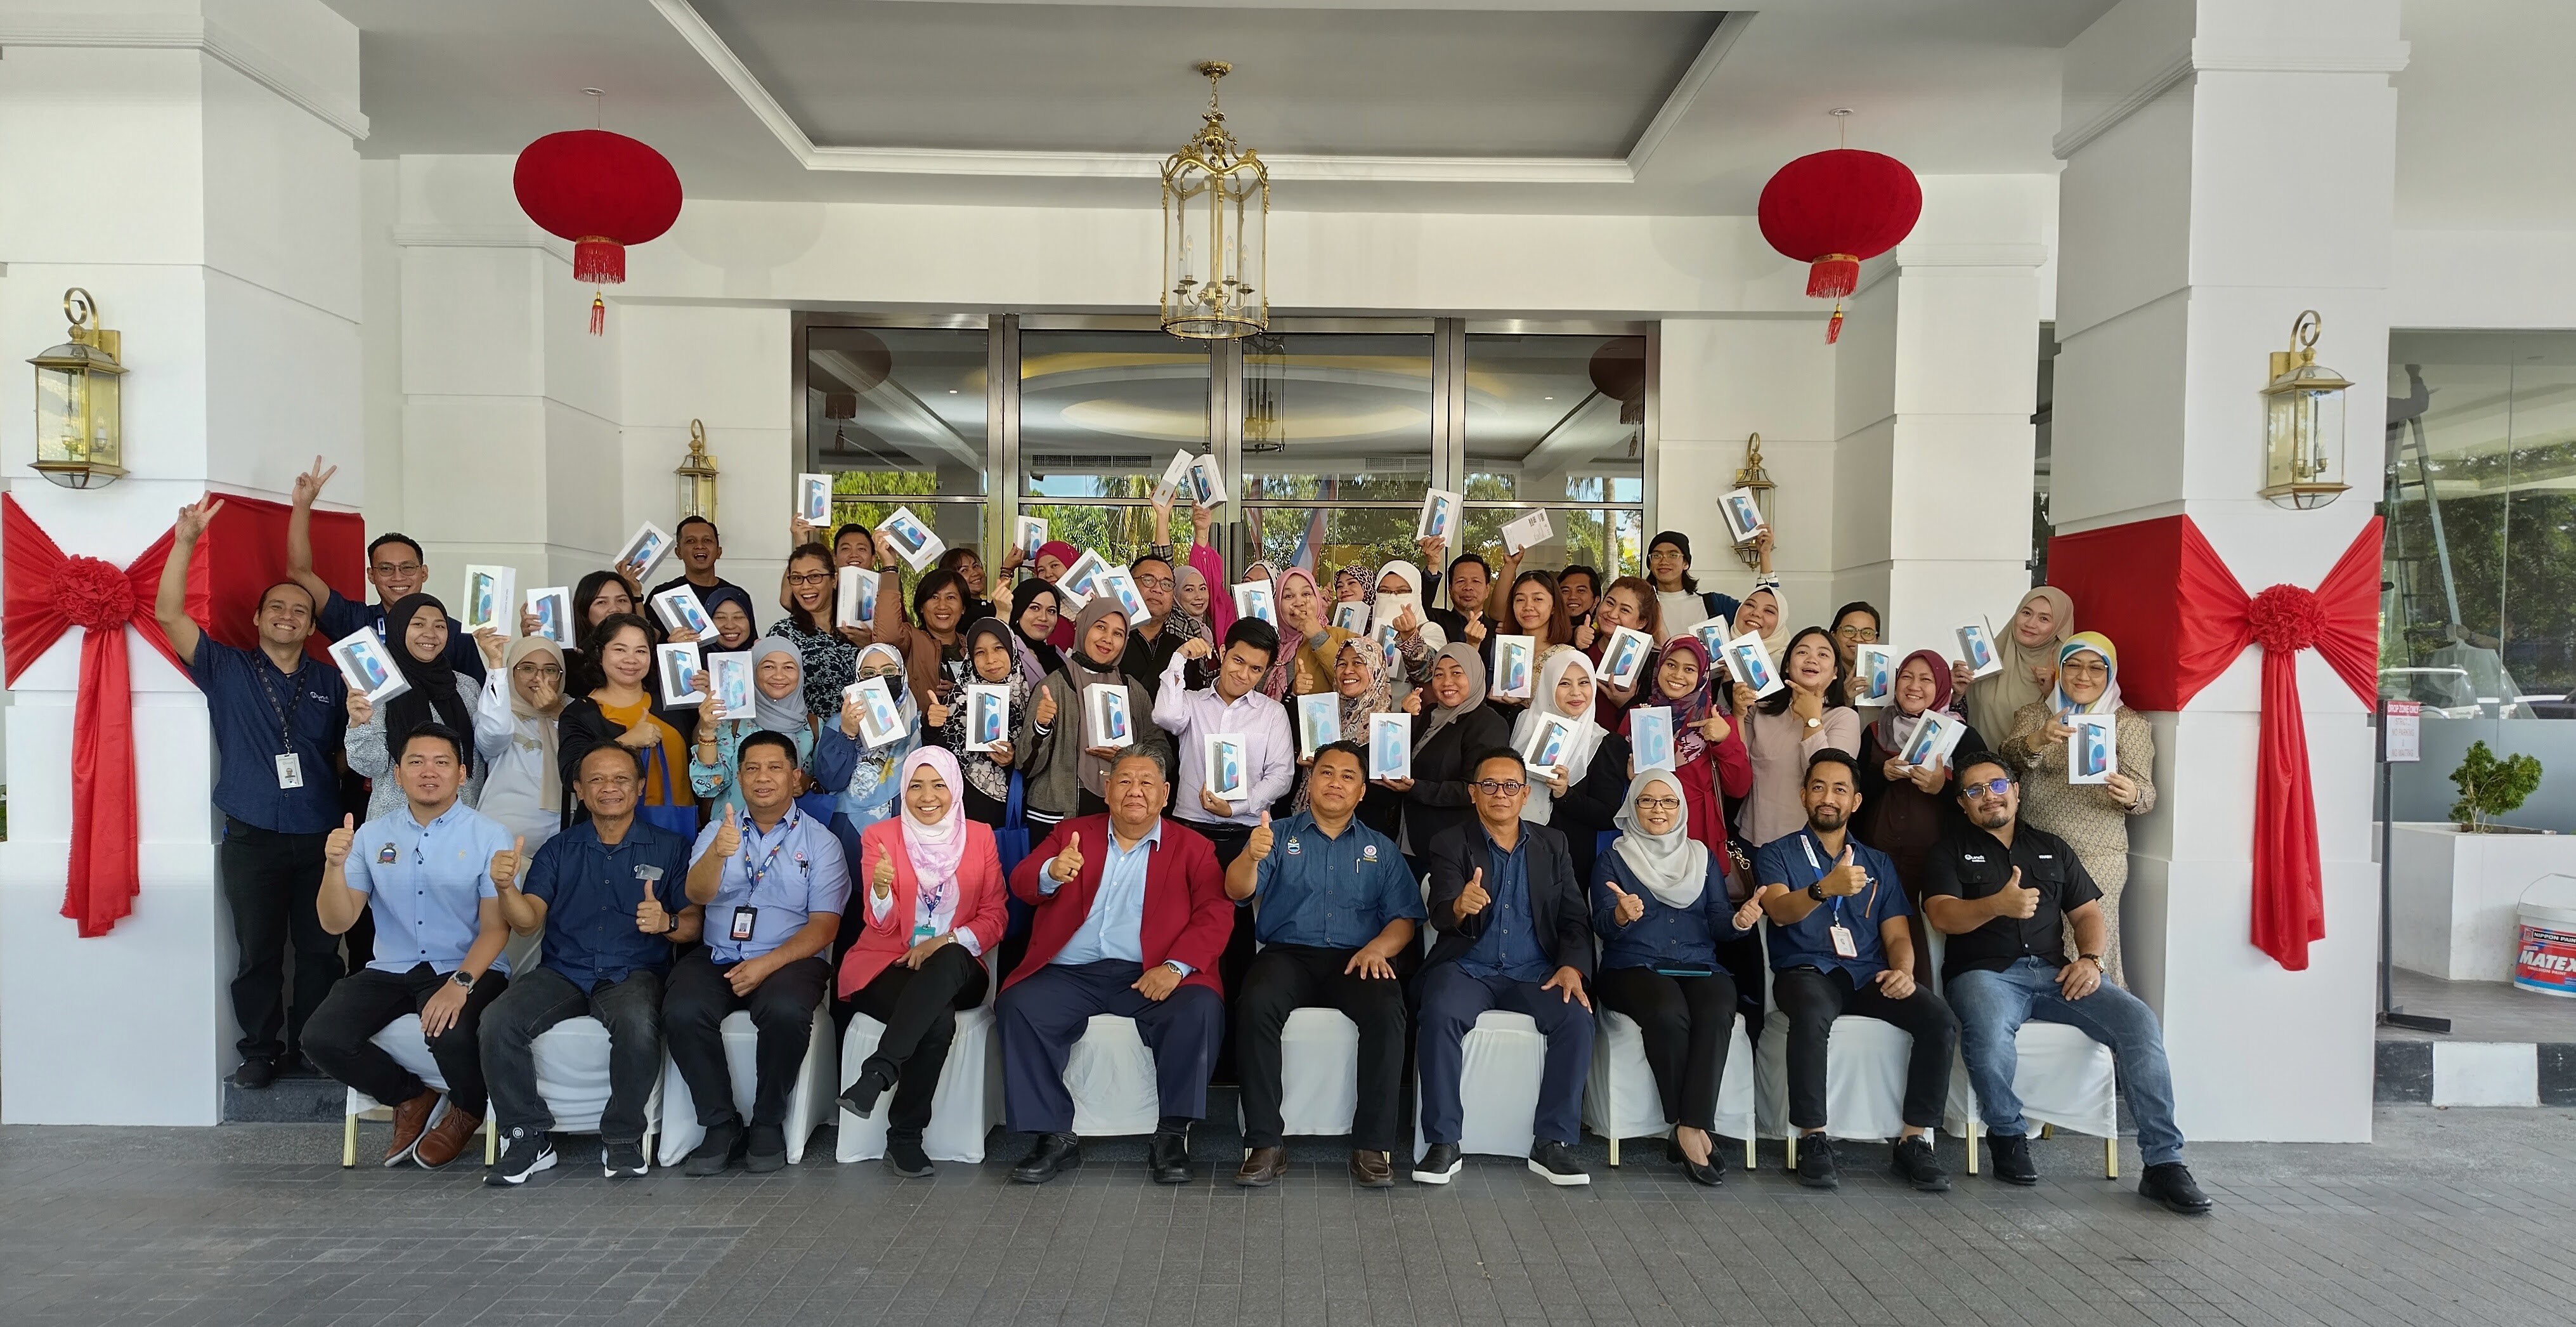 Program Penjana Pembudayaan Digital Unifi Business dan MARA Sabah